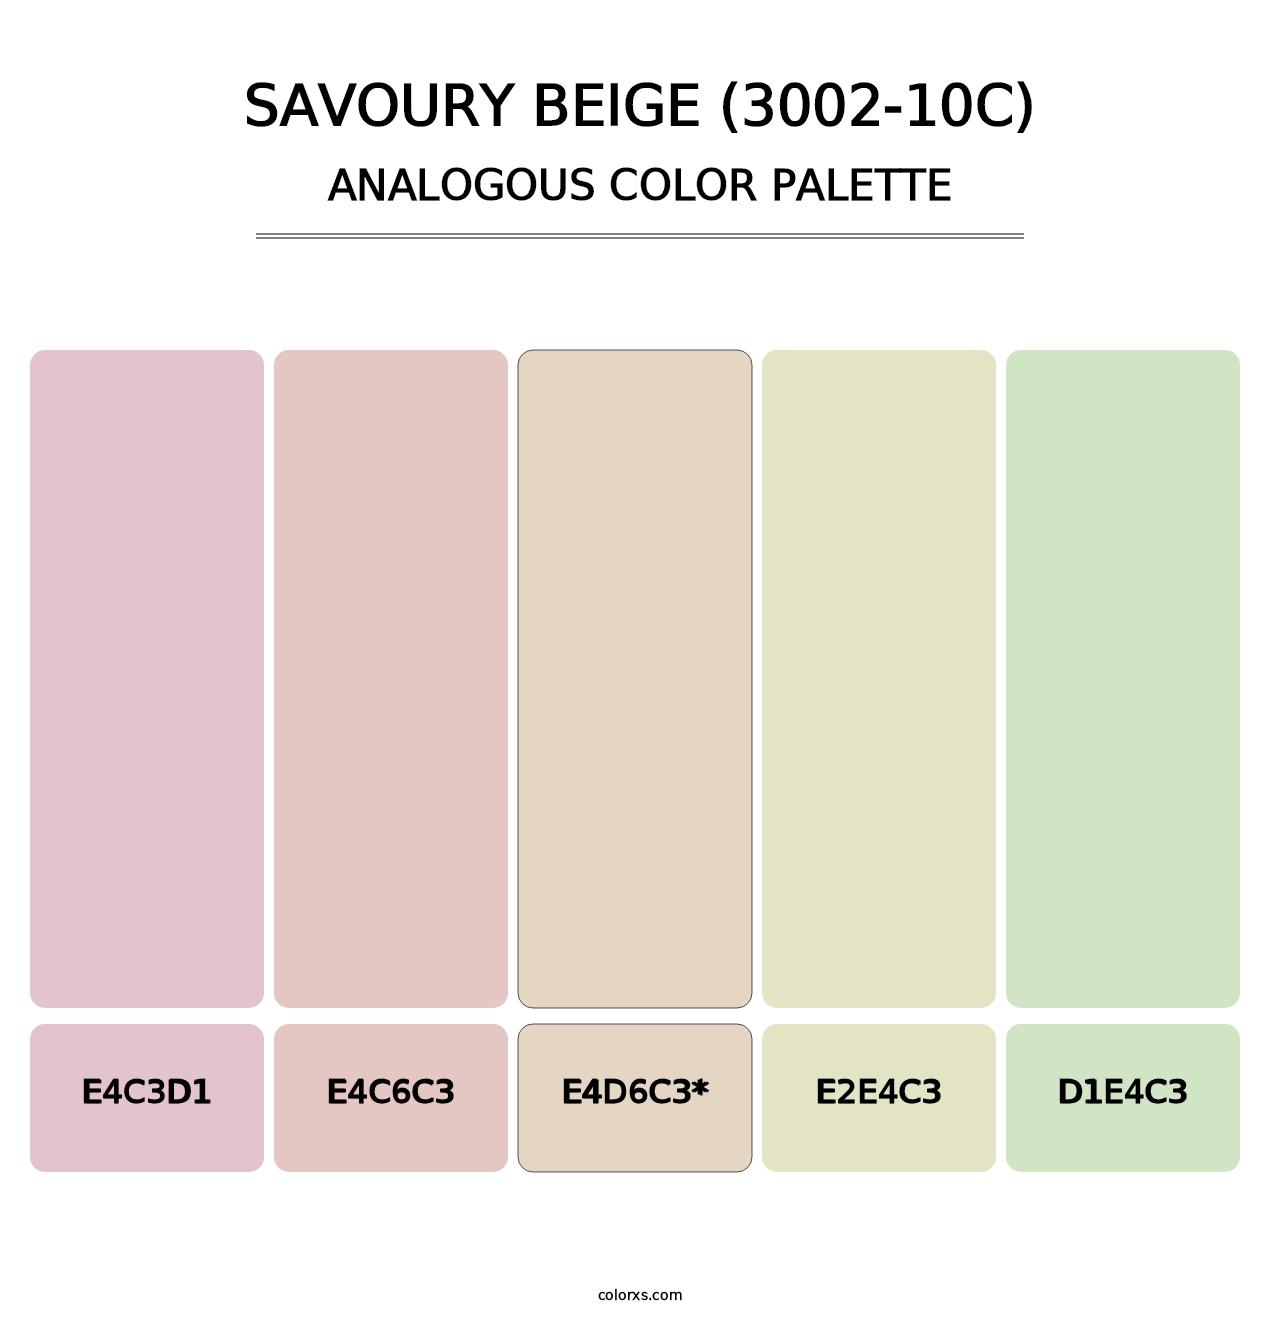 Savoury Beige (3002-10C) - Analogous Color Palette